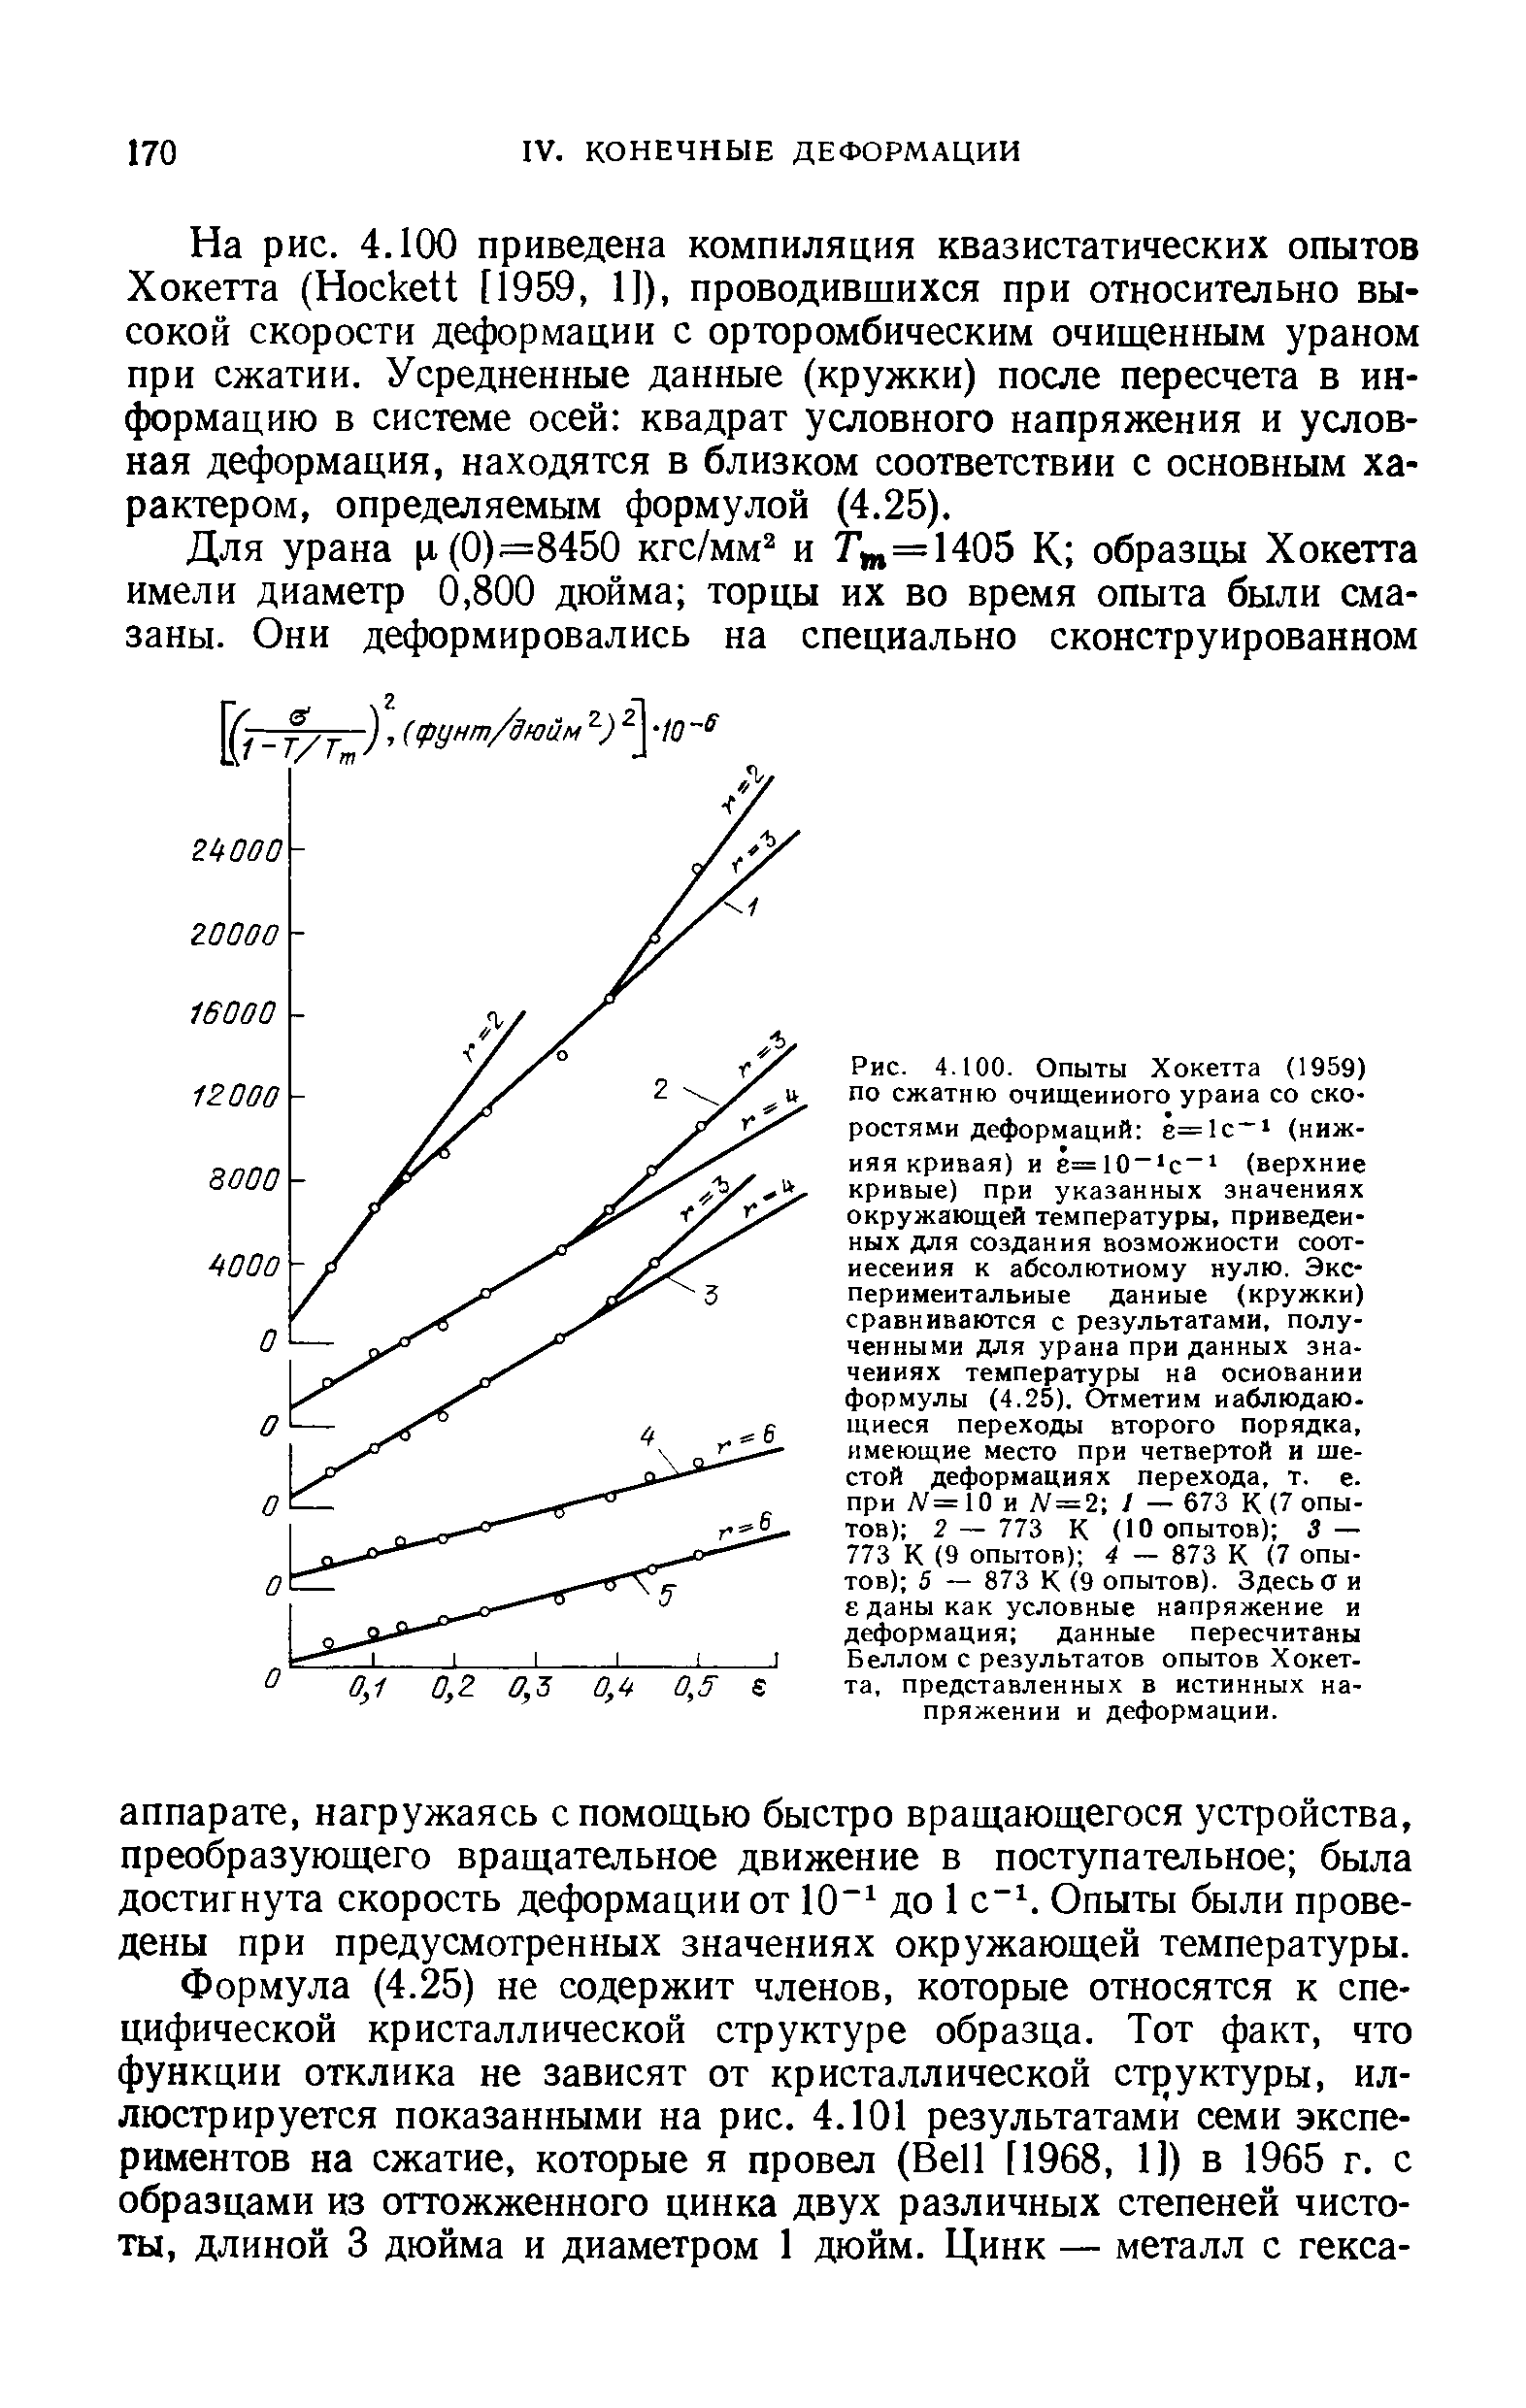 Рис. 4.100. Опыты Хокетта (1959) ПО сжатию очищенного урана со ско ростями деформаций ё=1с (нижняя кривая) и е=10 с (верхние кривые) при указанных значениях окружающей температуры, приведенных для создания возможности соотнесения к <a href="/info/43666">абсолютному нулю</a>. Экспериментальные данные (кружкн) сравниваются с результатами, полученными для урана при данных значениях температуры на основании формулы (4.25). Отметим наблюдающиеся переходы второго порядка, имеющие место при четвертой и шестой деформациях перехода, т. е. при Л =10 и Л = 2 / — 673 К (7 опытов) 2 — 773 К (10 опытов) S — 773 К (9 опытов) 4 — 873 К (7 опытов) 5 — 873 К (9 опытов). Здесь а и еданы как <a href="/info/28798">условные напряжение</a> и деформация данные пересчитаны Беллом с результатов опытов Хокетта, представленных в <a href="/info/28792">истинных напряжении</a> и деформации.
